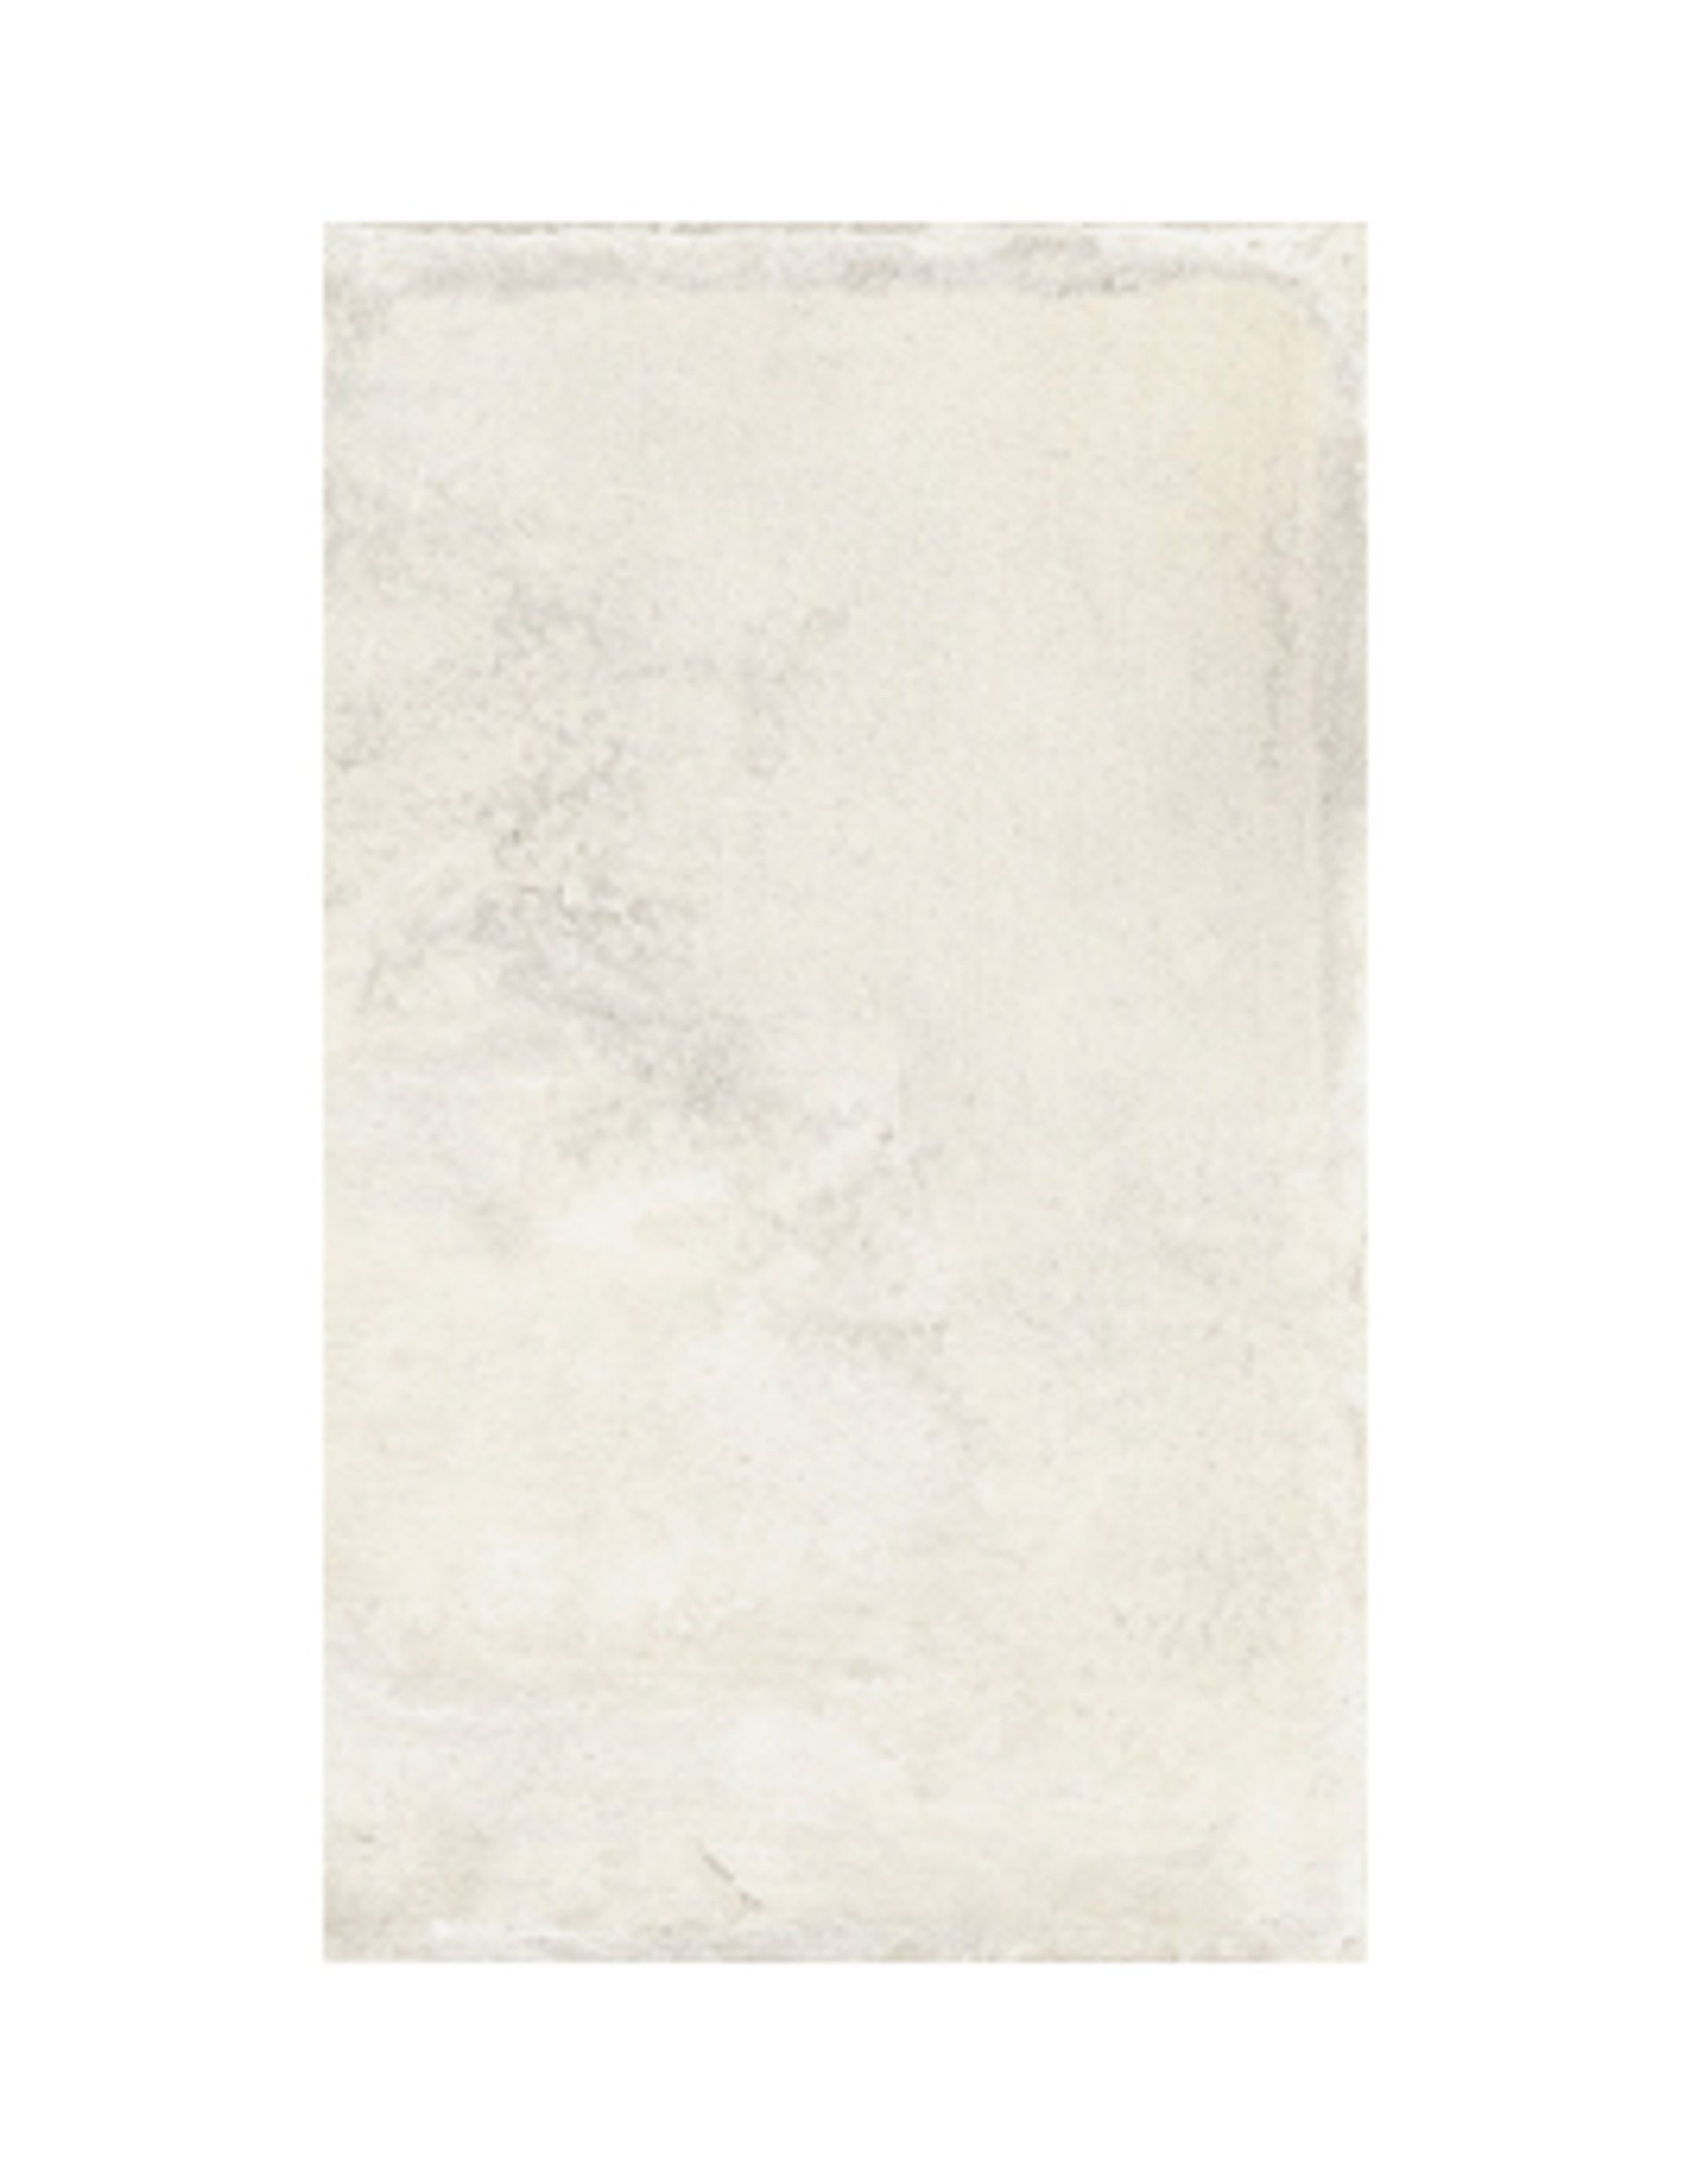 Carrelage NATURE LISSE, aspect pierre blanc, dim 50.00 x 50.00 cm